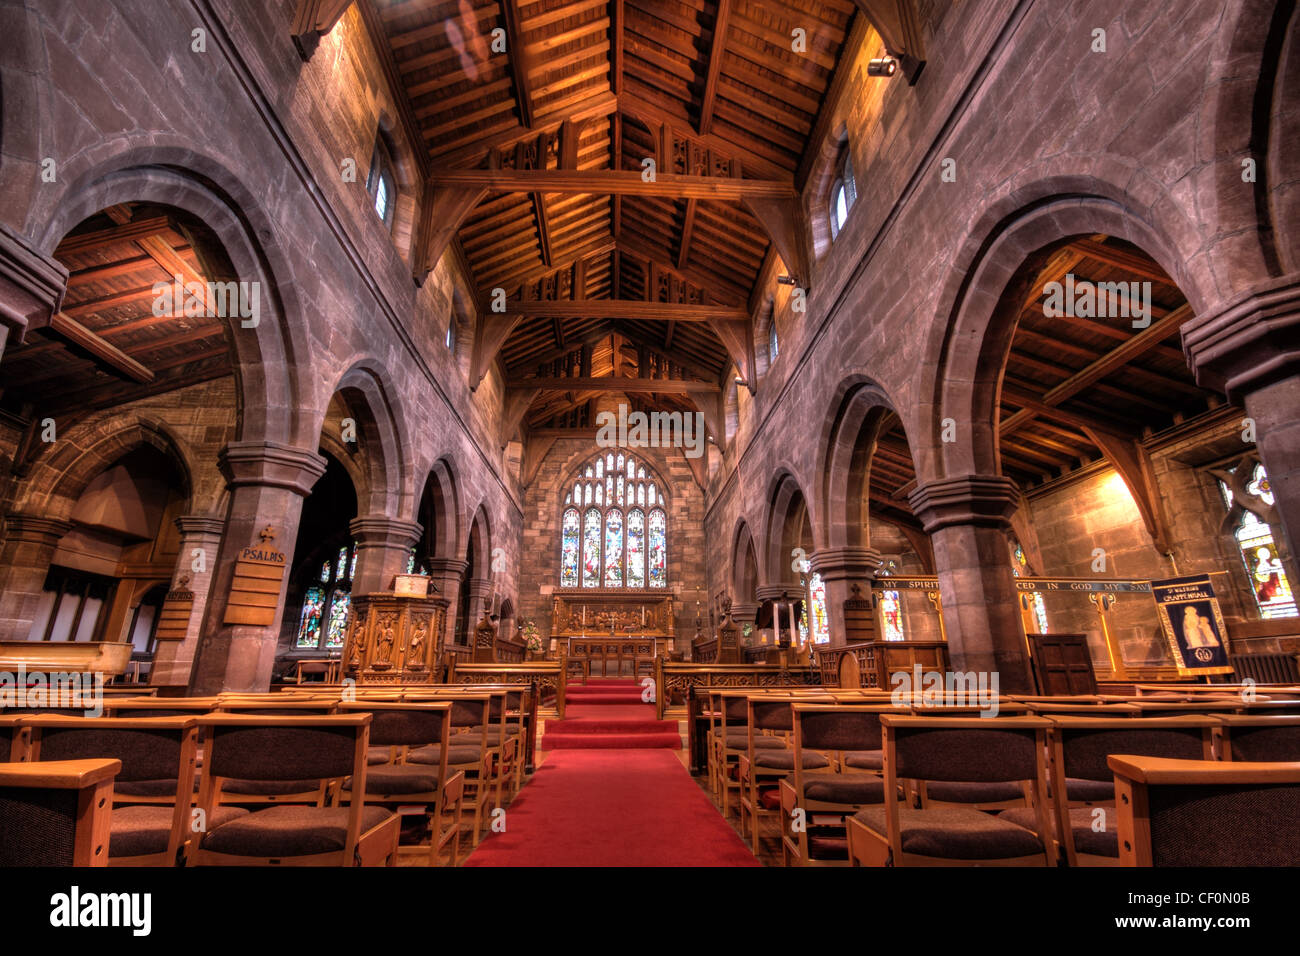 L'intérieur de l'église St Wilfrids Village Grappenhall Warrington, Cheshire, au sud, WA4, Angleterre, Royaume-Uni Banque D'Images